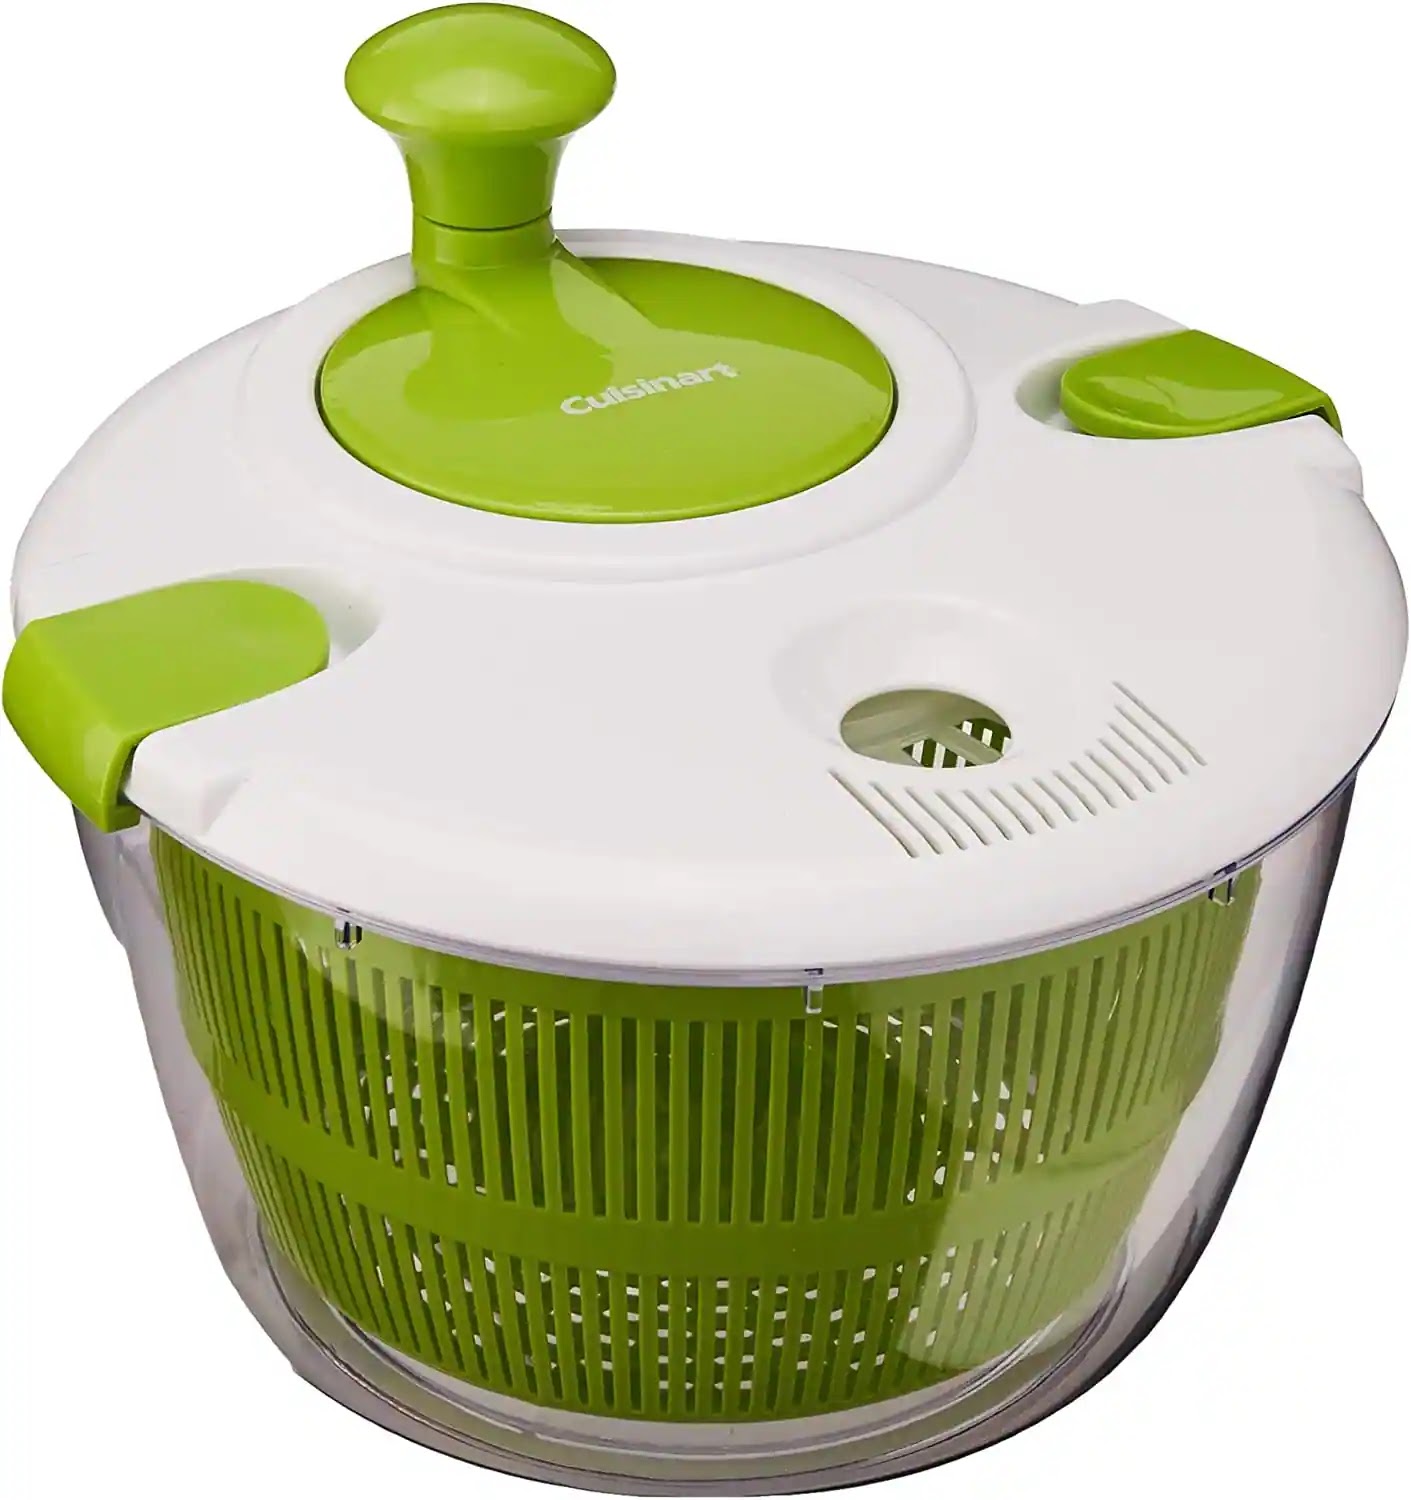 Spin Vegetable Washing Basket